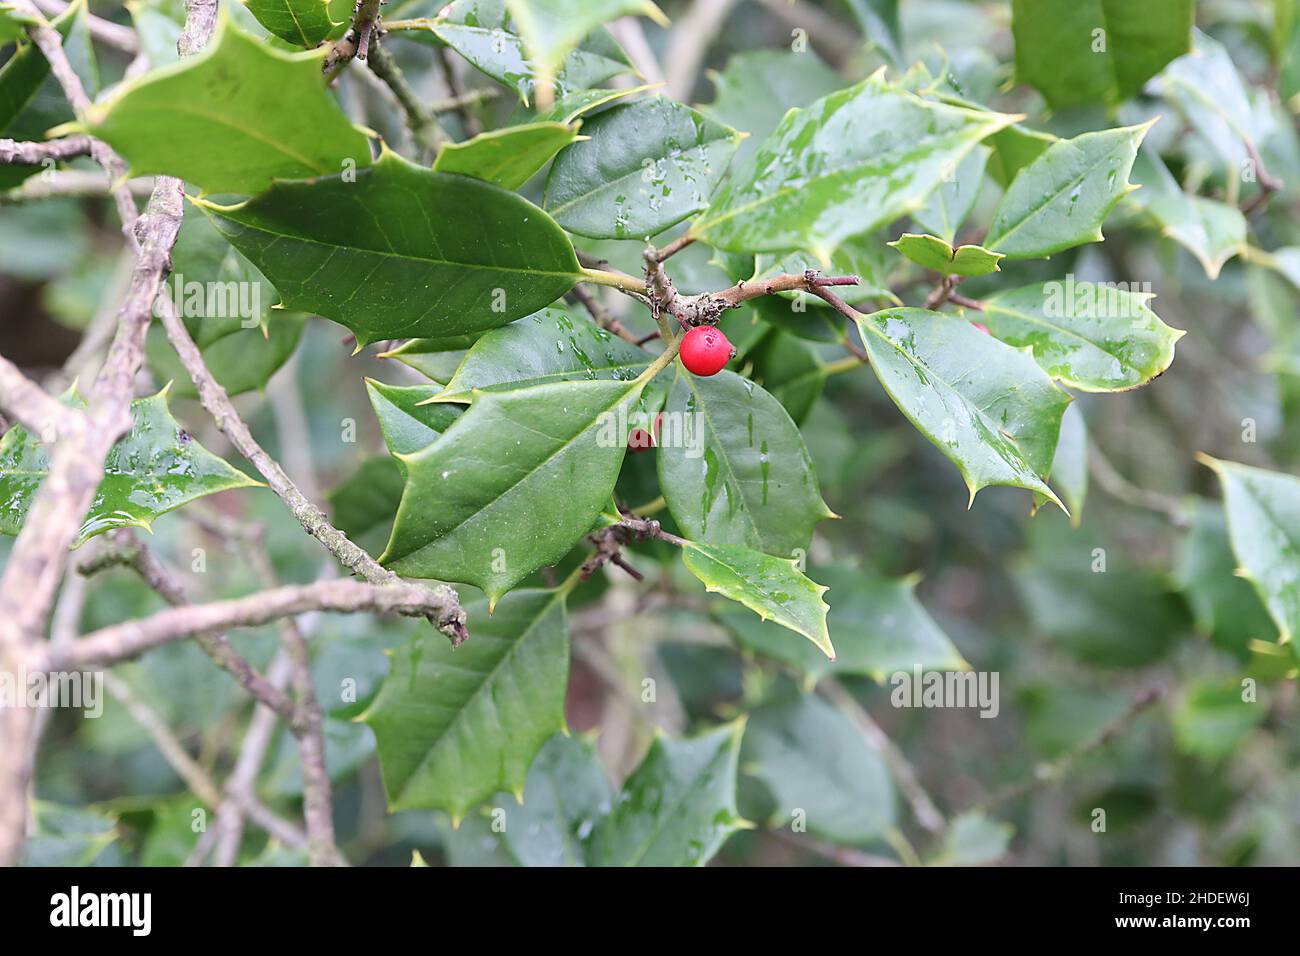 Ilex opaca American Holly – bayas rojas y hojas mates de color verde medio con márgenes espinosos, enero, Inglaterra, Reino Unido Foto de stock